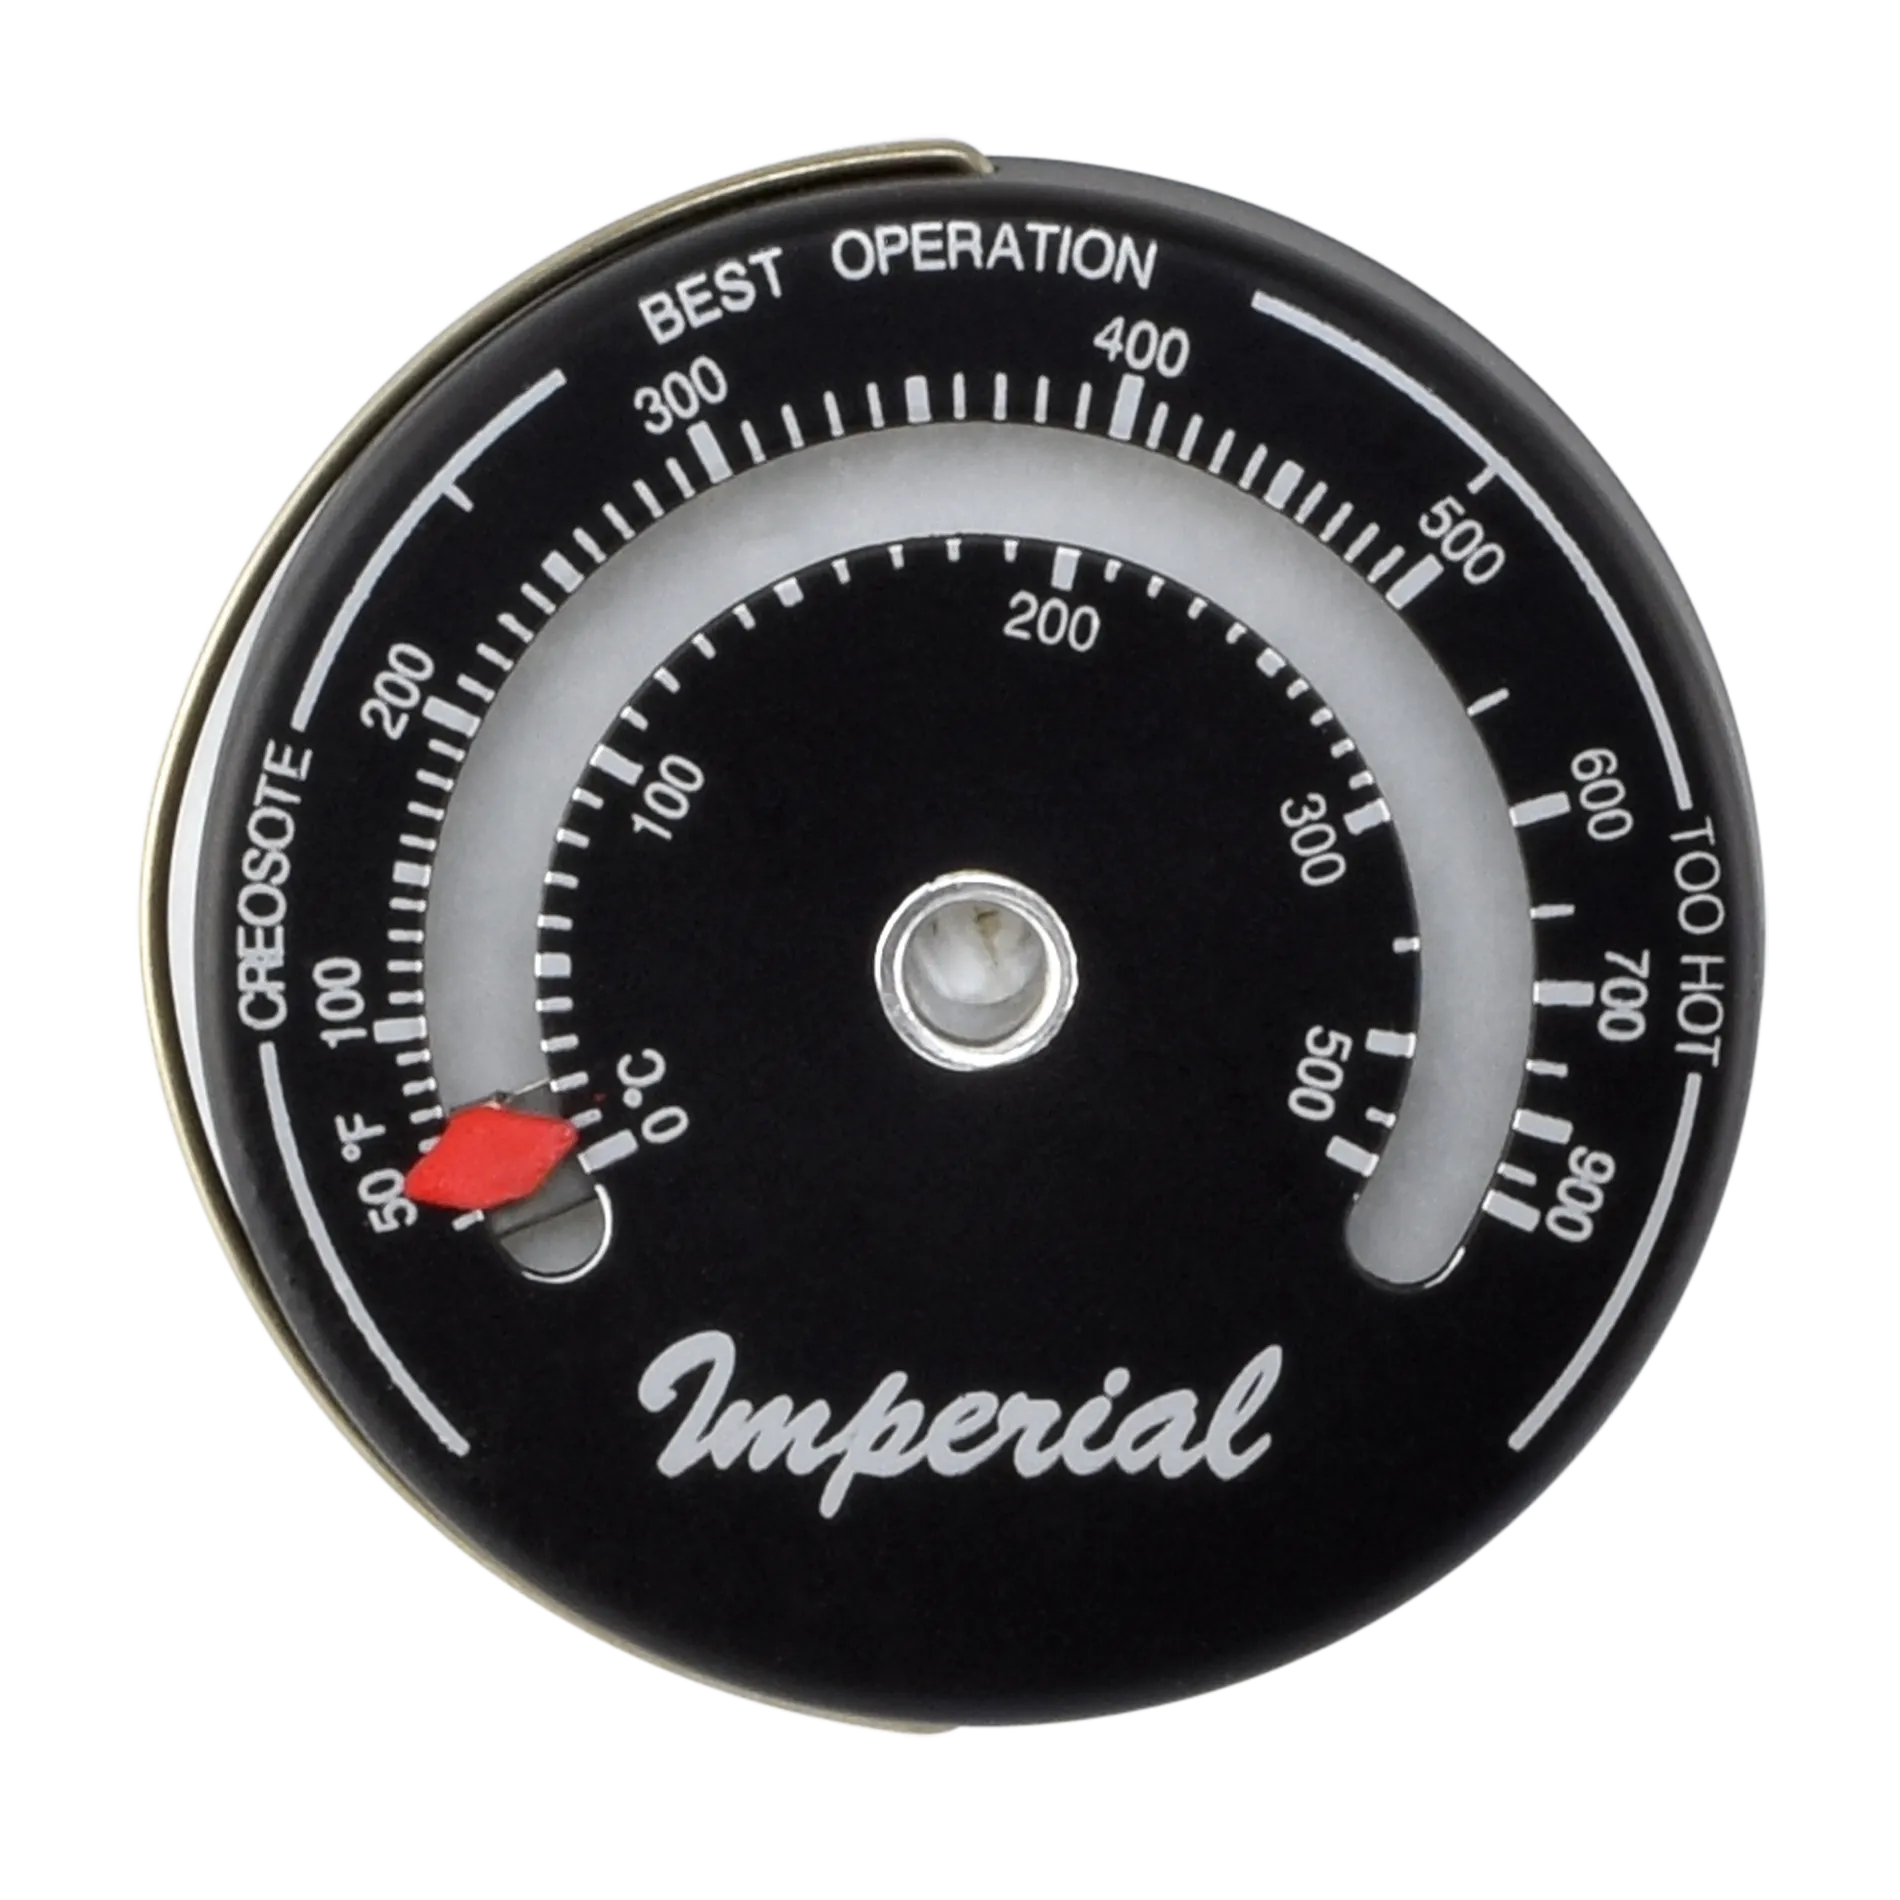 Thermomètre de poêle Magnétique